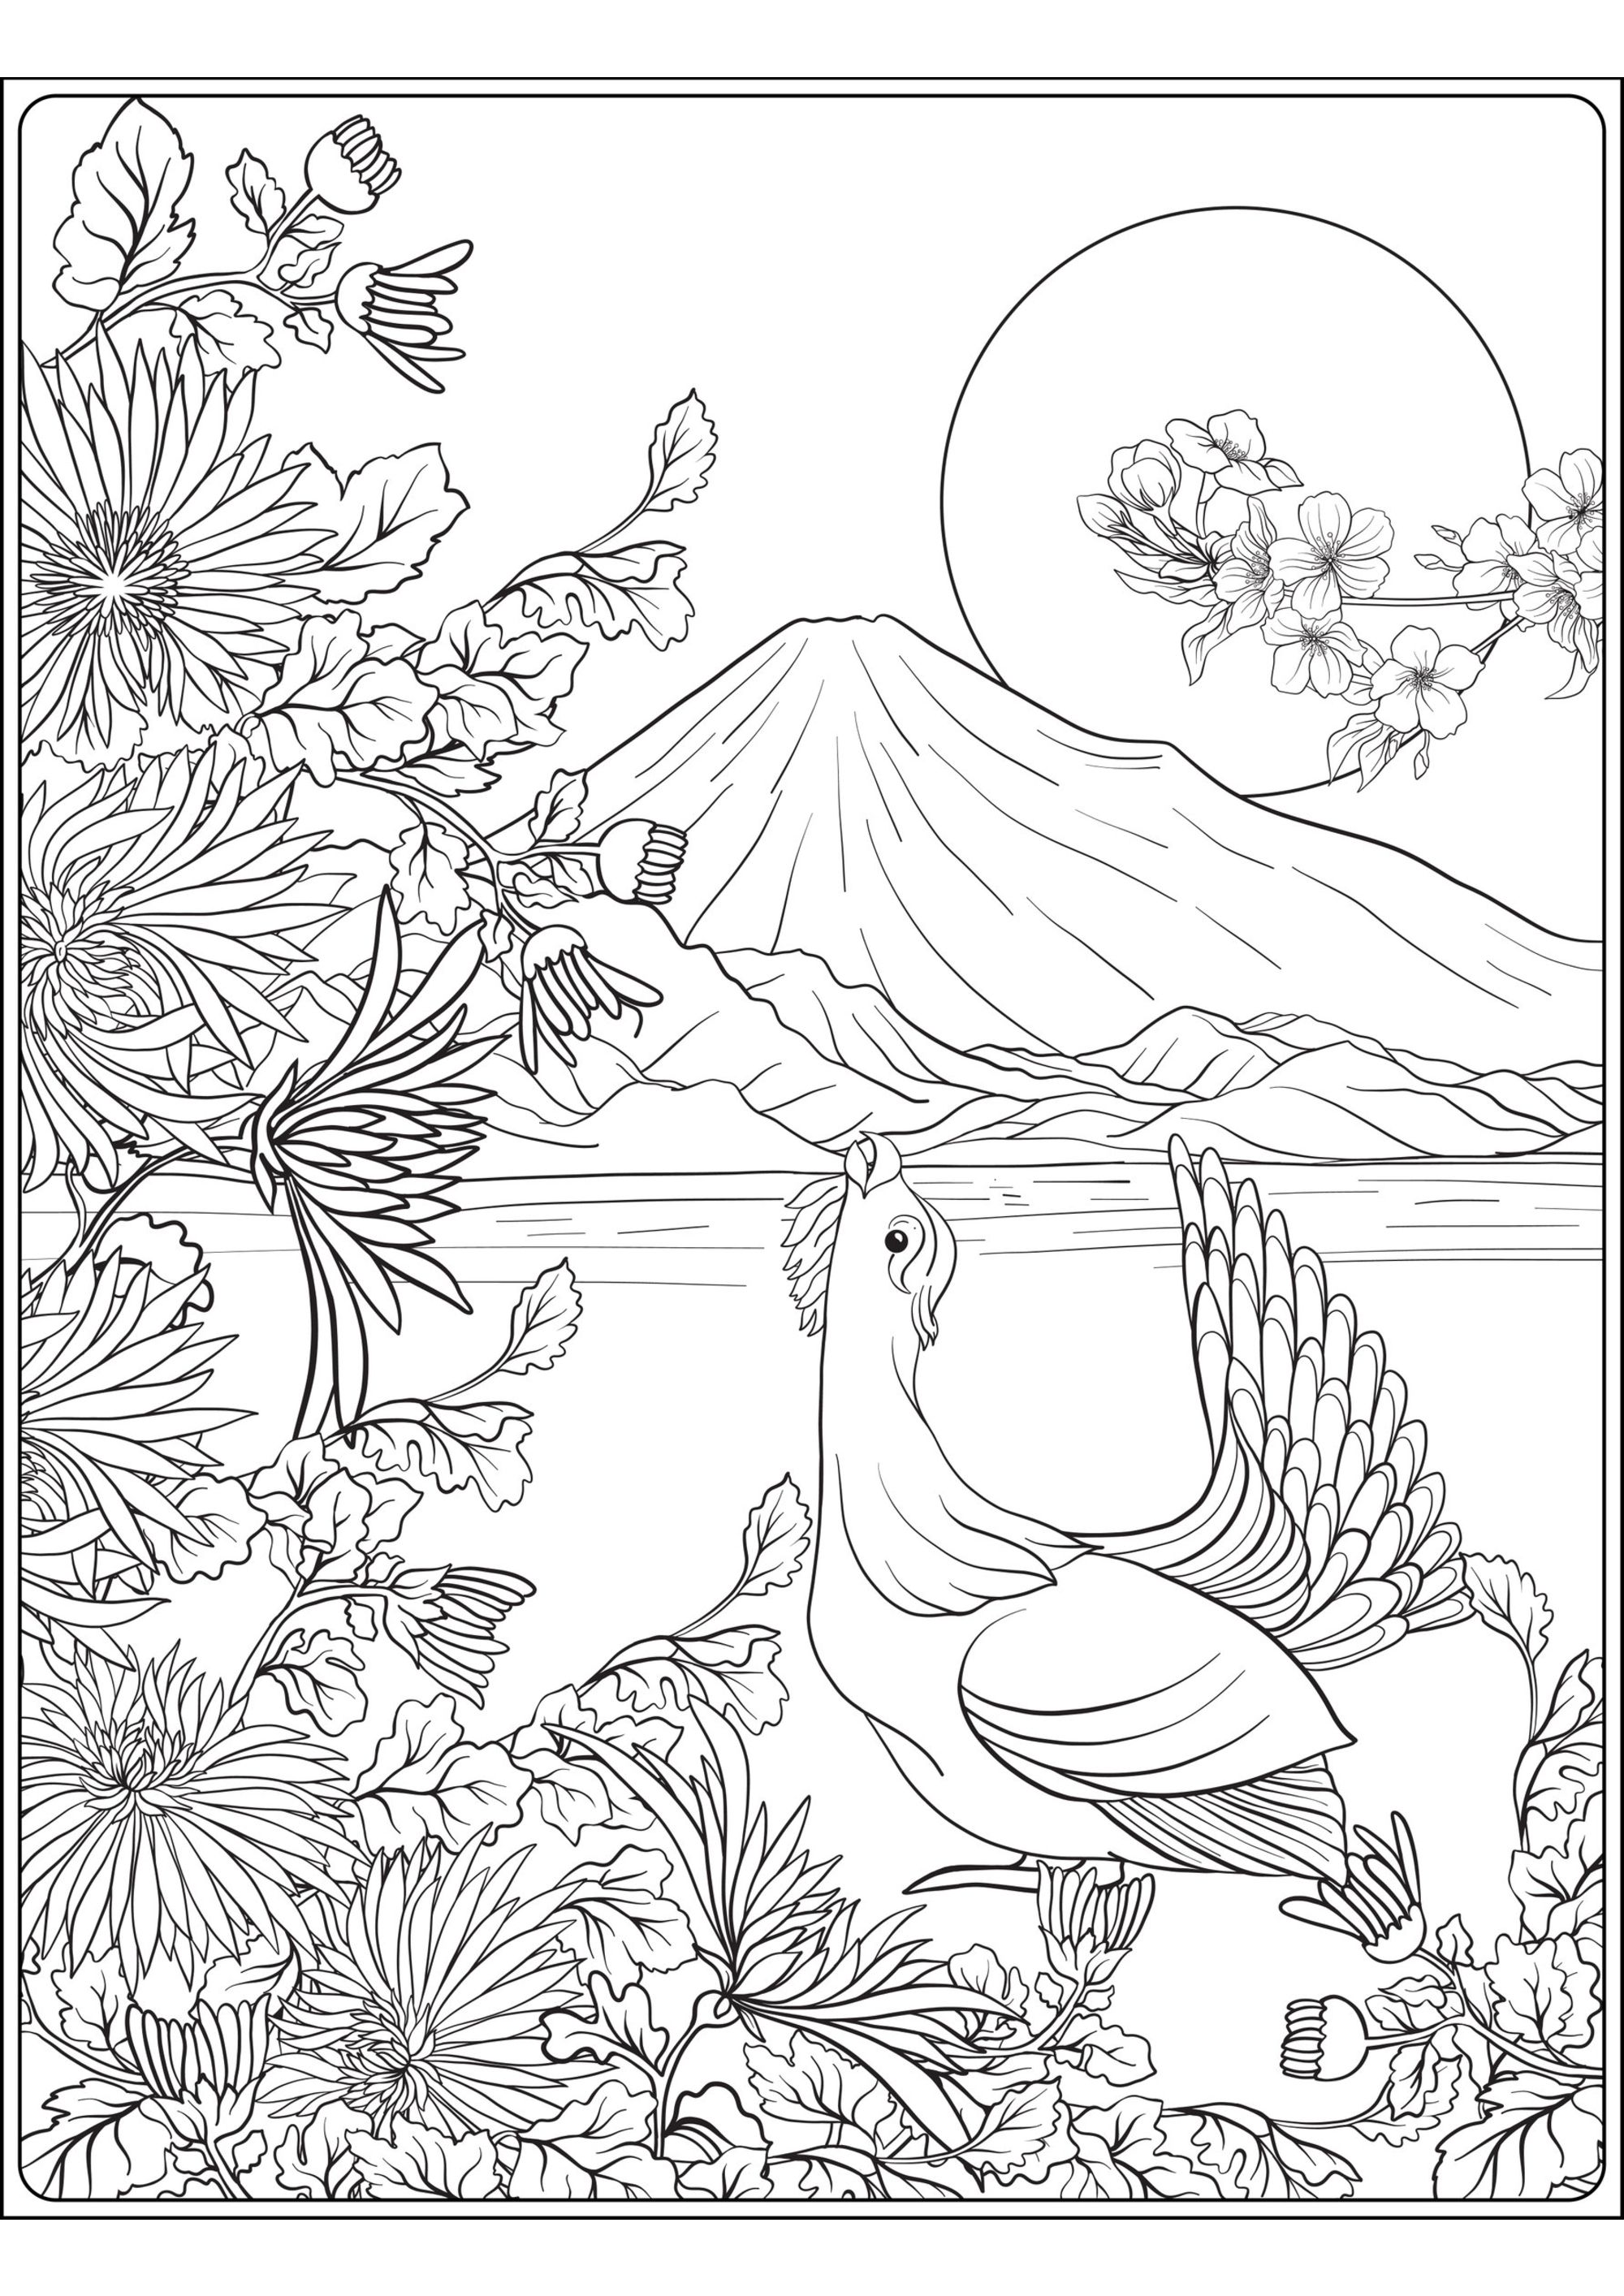 Berg Fuji und Vogel. Eine tolle Malvorlage zum Thema Japan, mit einem Vogel, dem Berg Fuji und einem Vordergrund voller schöner Pflanzen und Blumen, Künstler : Elena Besedina   Quelle : 123rf